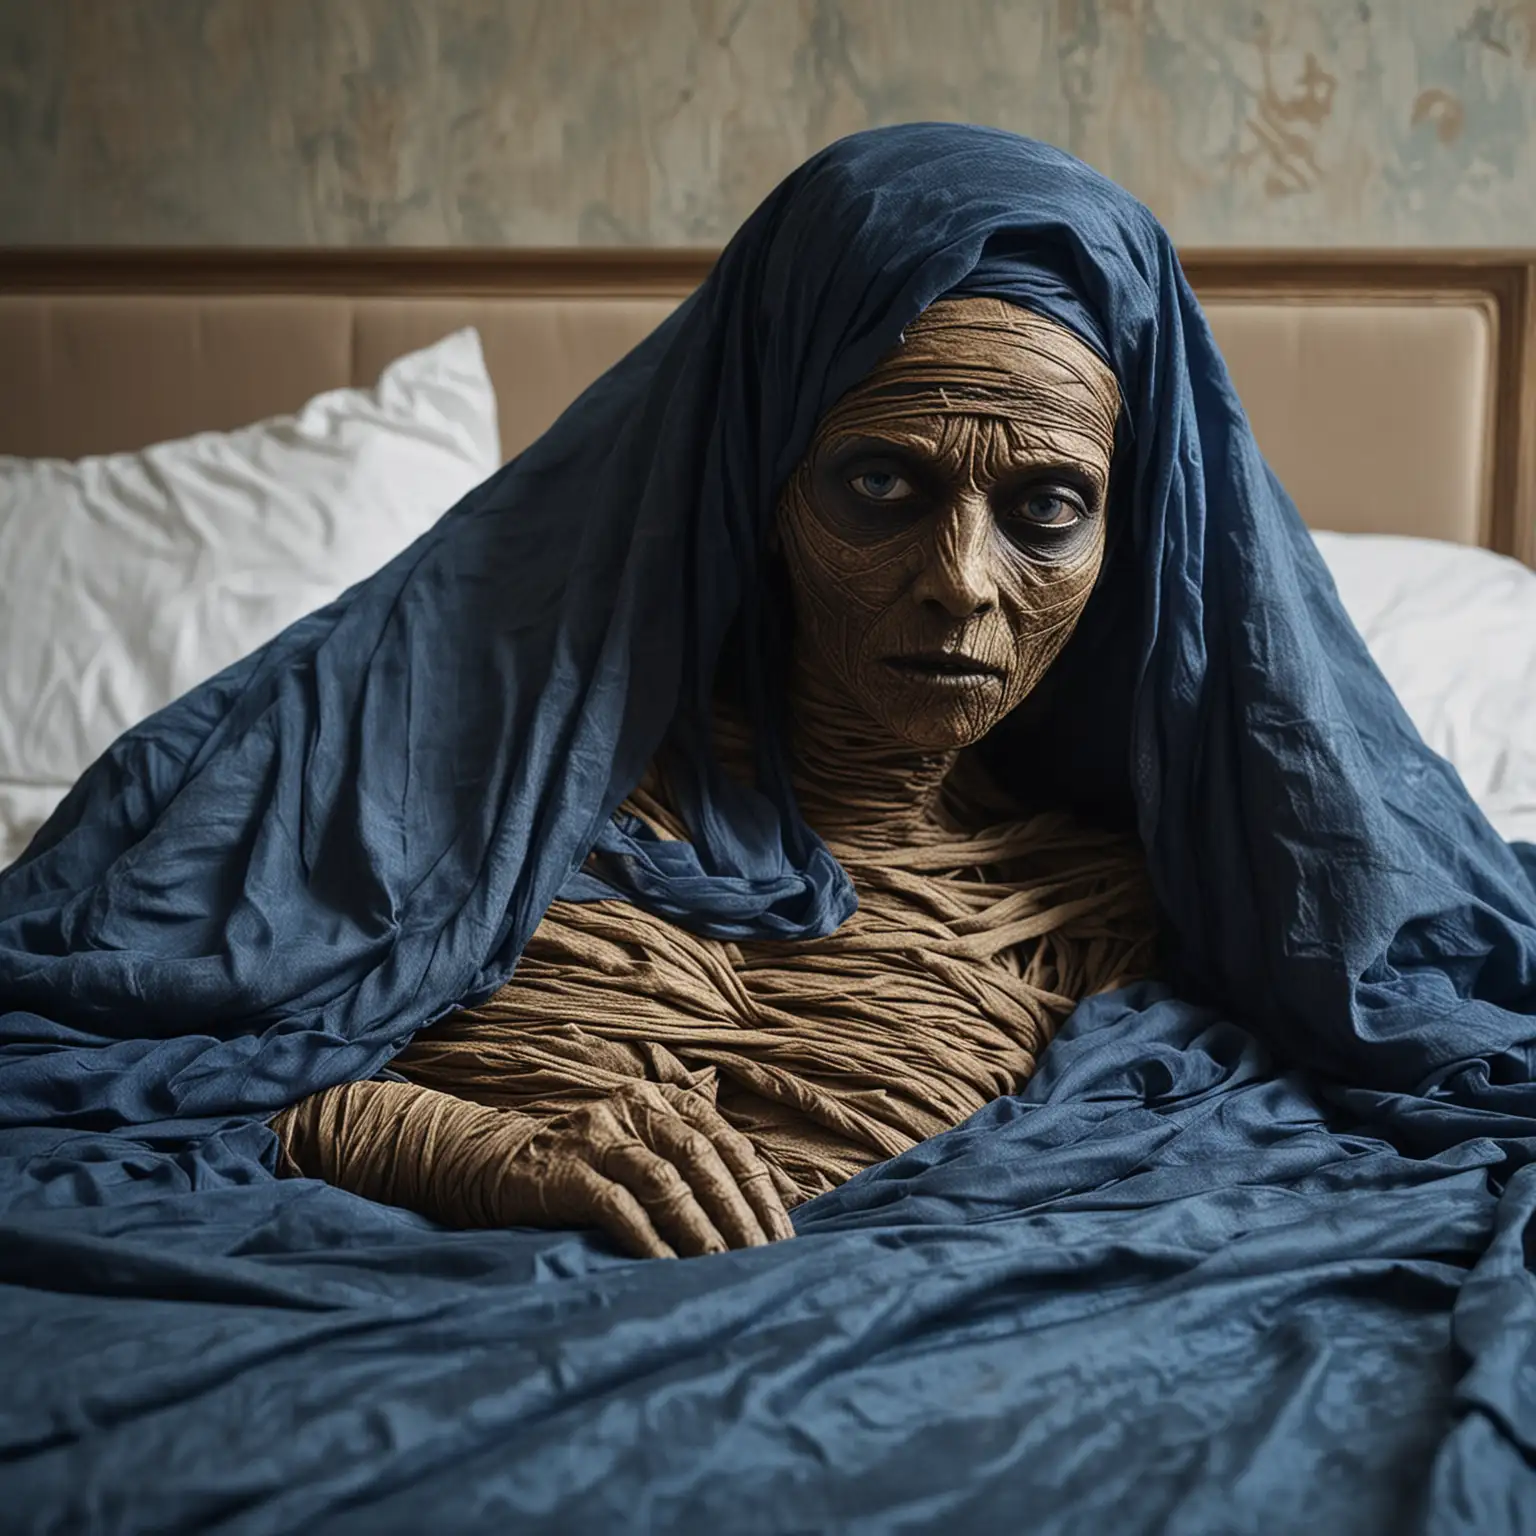 dans un appartement ambiance glauque
sur un lit une momie allongé avec un voile bleu qui couvre le visage